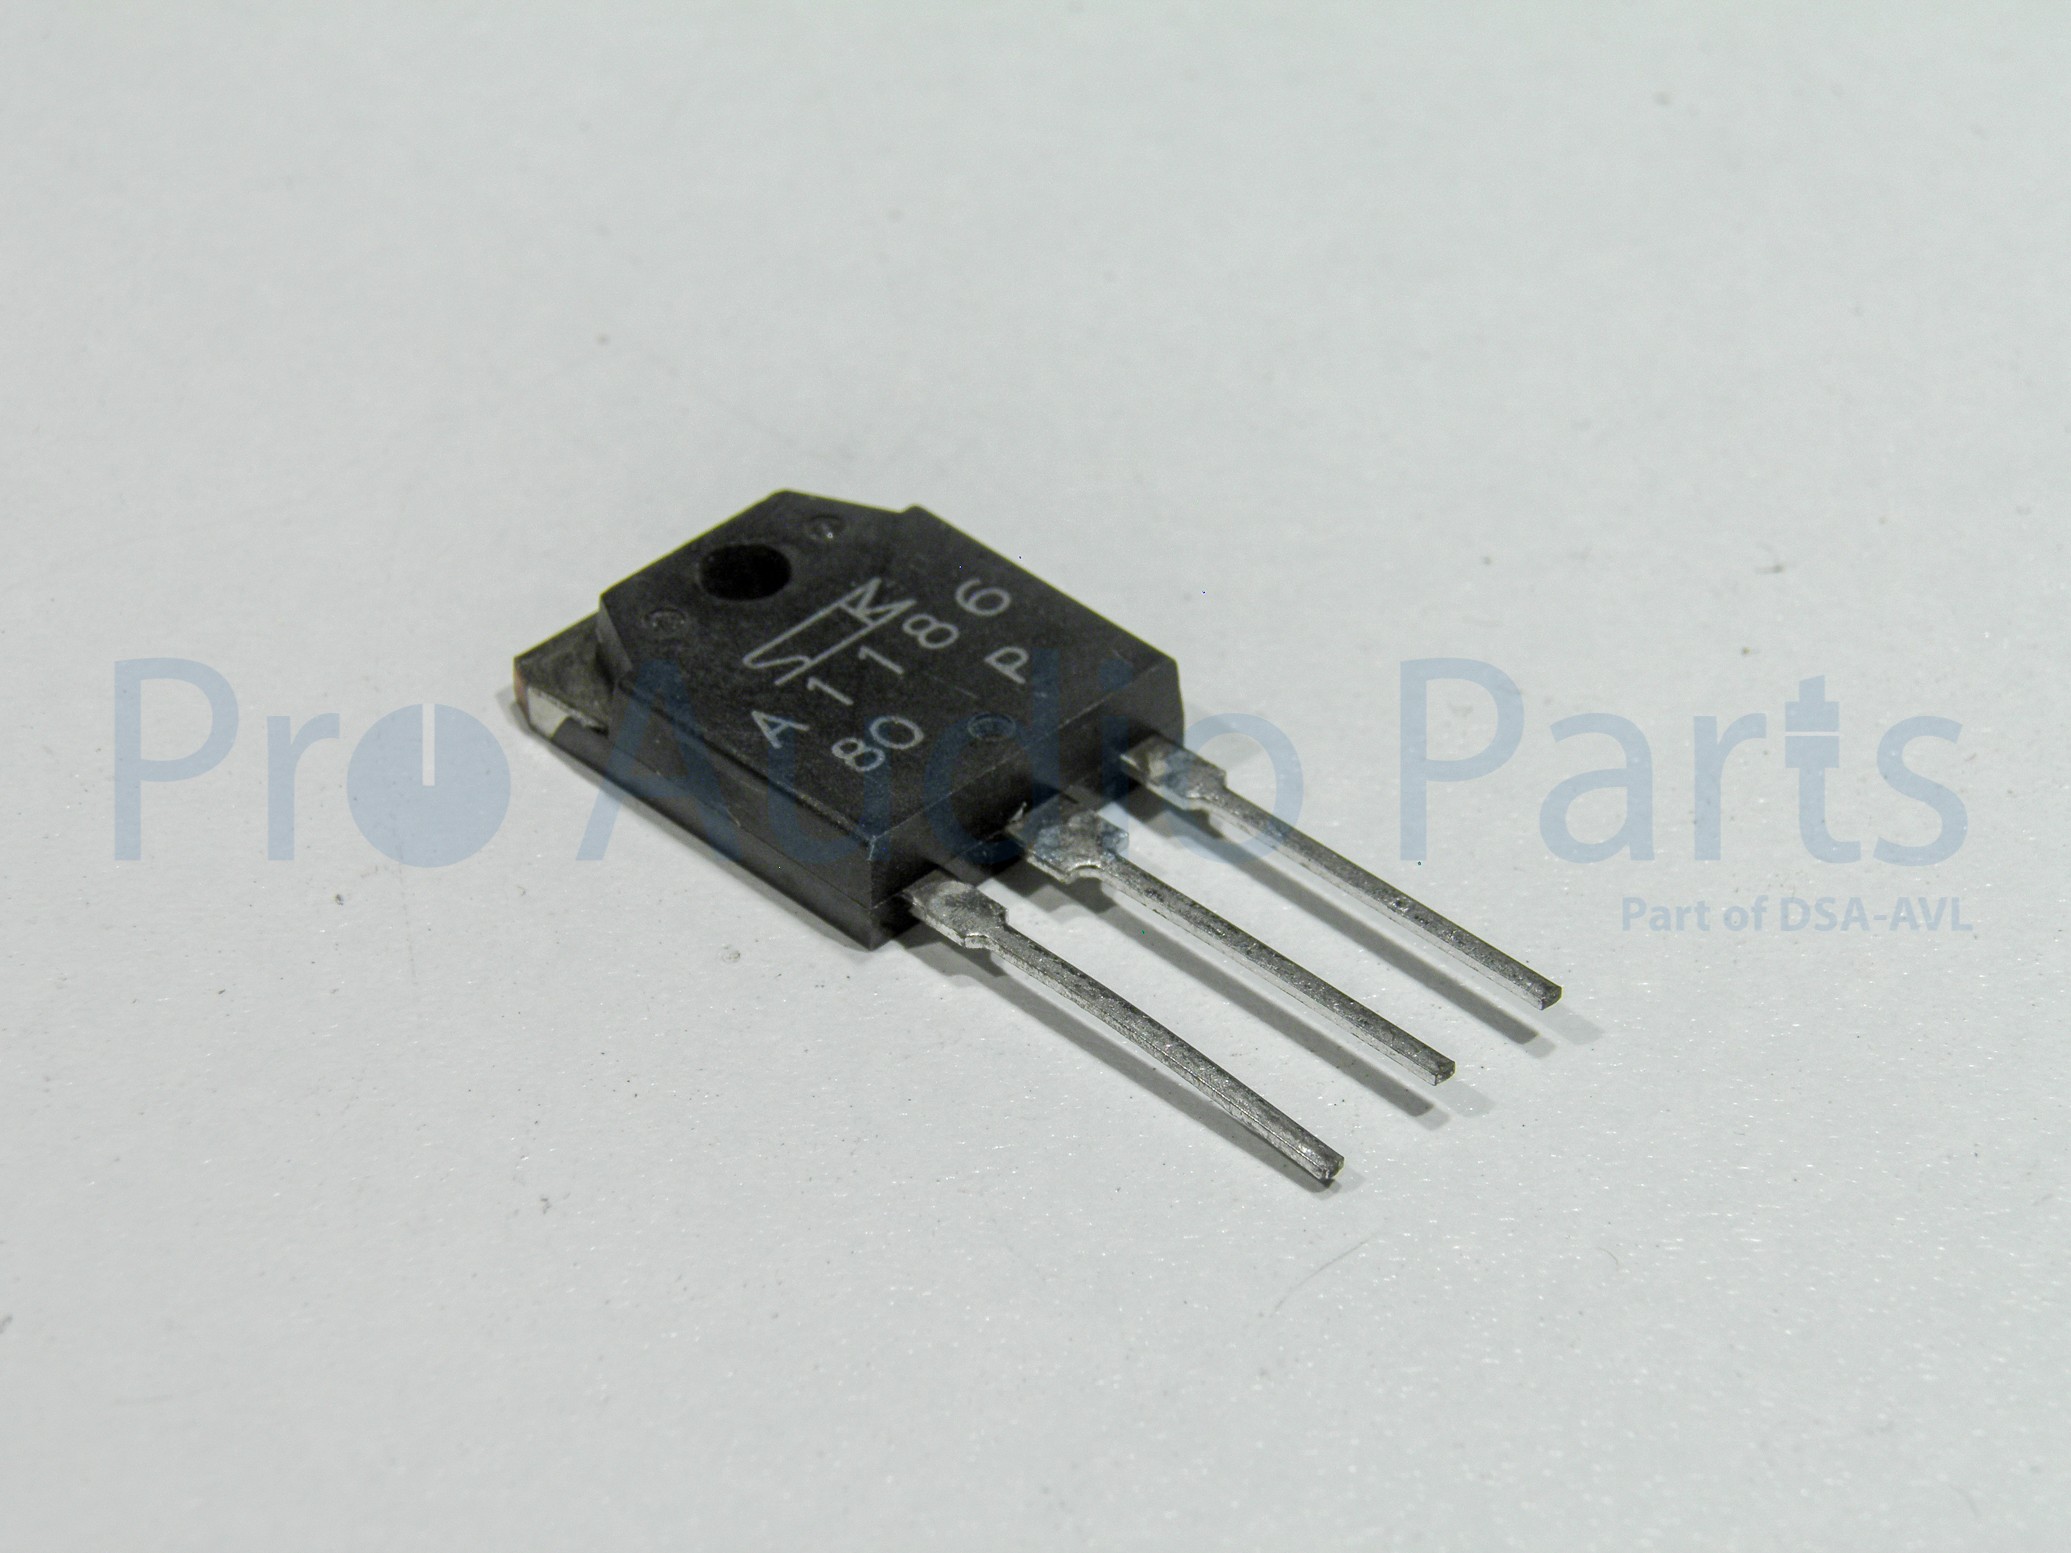 Transistor 2SA1186 Crown part no C8573-5 o.a.  800CSL, Crown, CT-1600, CT-1610, CT-200, CT-210, CT-410, CT-800, CT-810, MA-1200, MA-1202, MA-2400, MA-600, MA-602, MT-1200, MT-2400, MT-600, PB2, PT 2.1